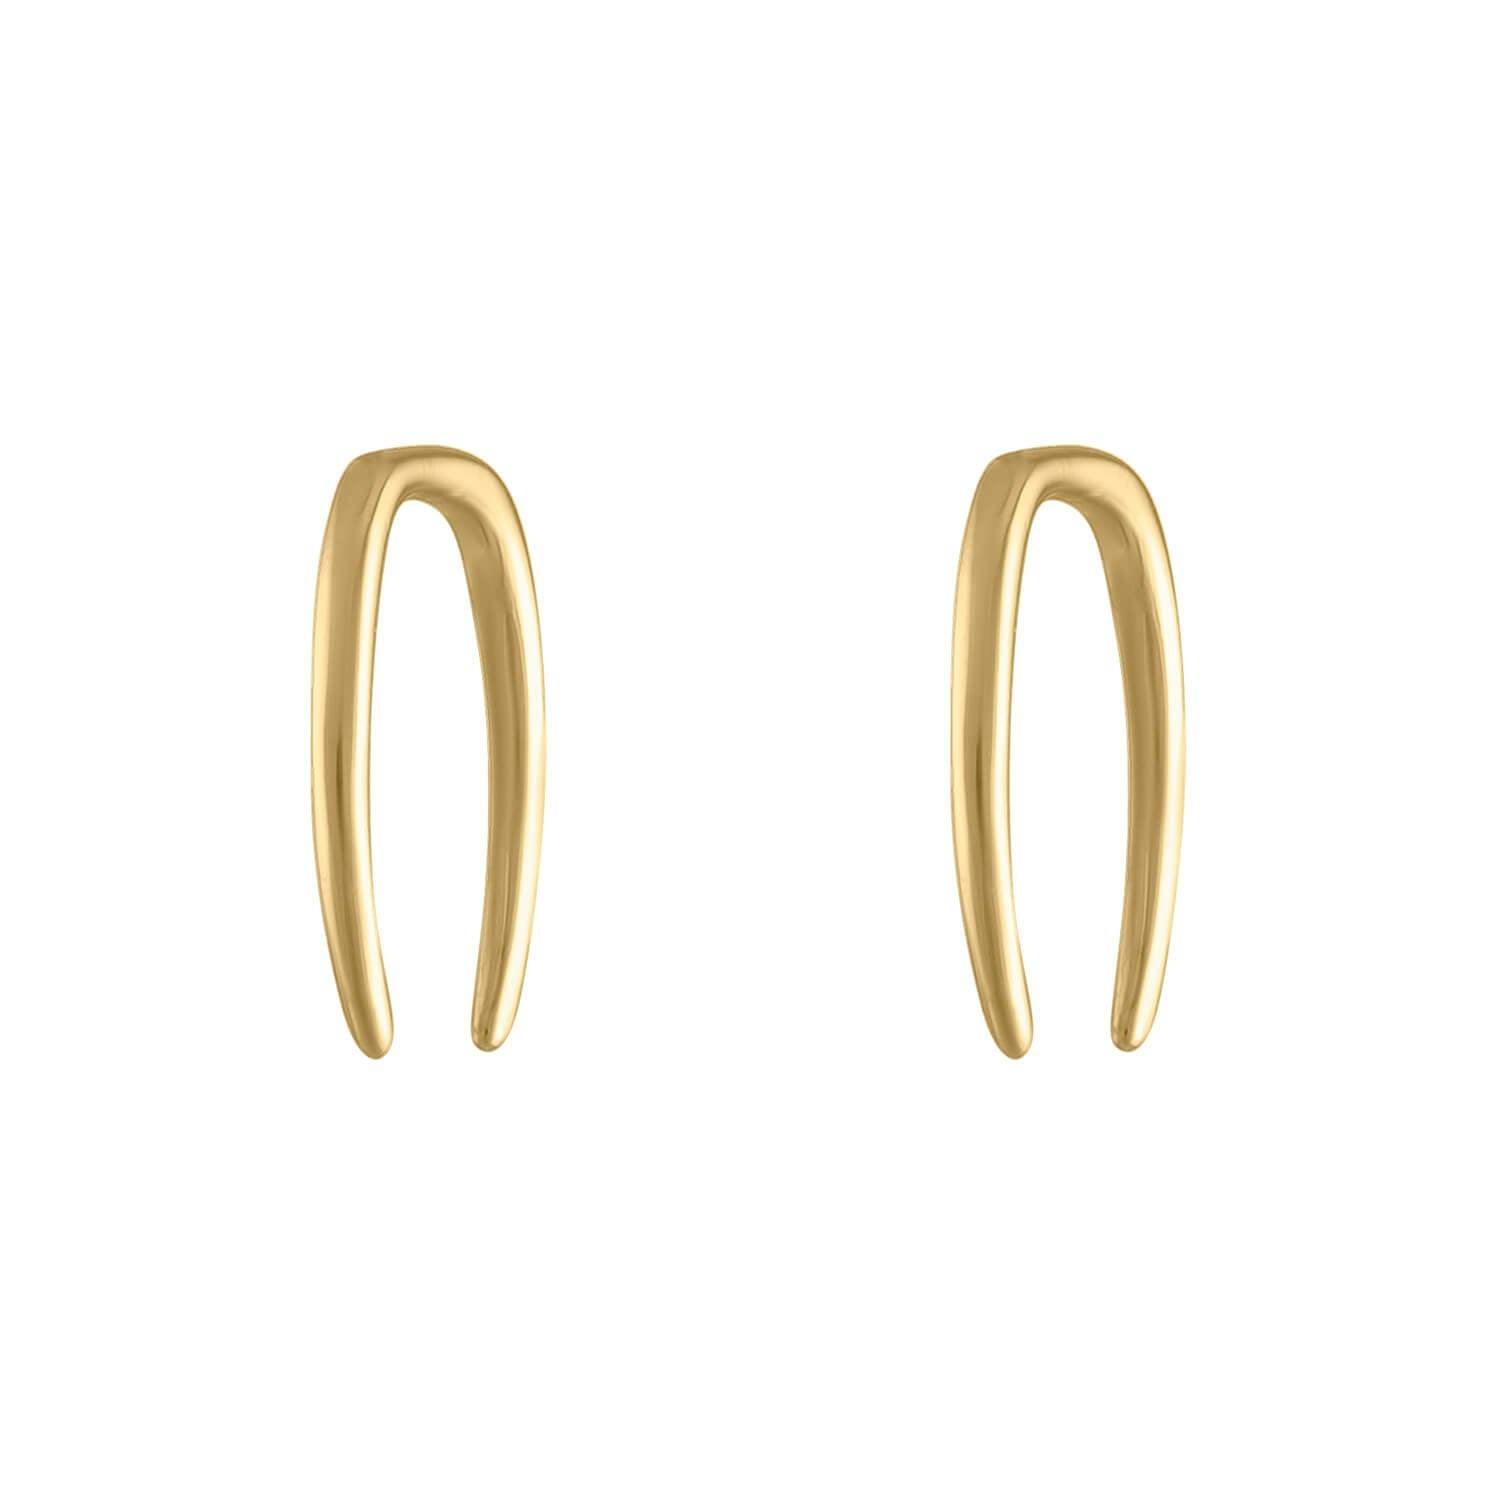 Whisper Open Hoop Earrings in 14k Gold - 18G